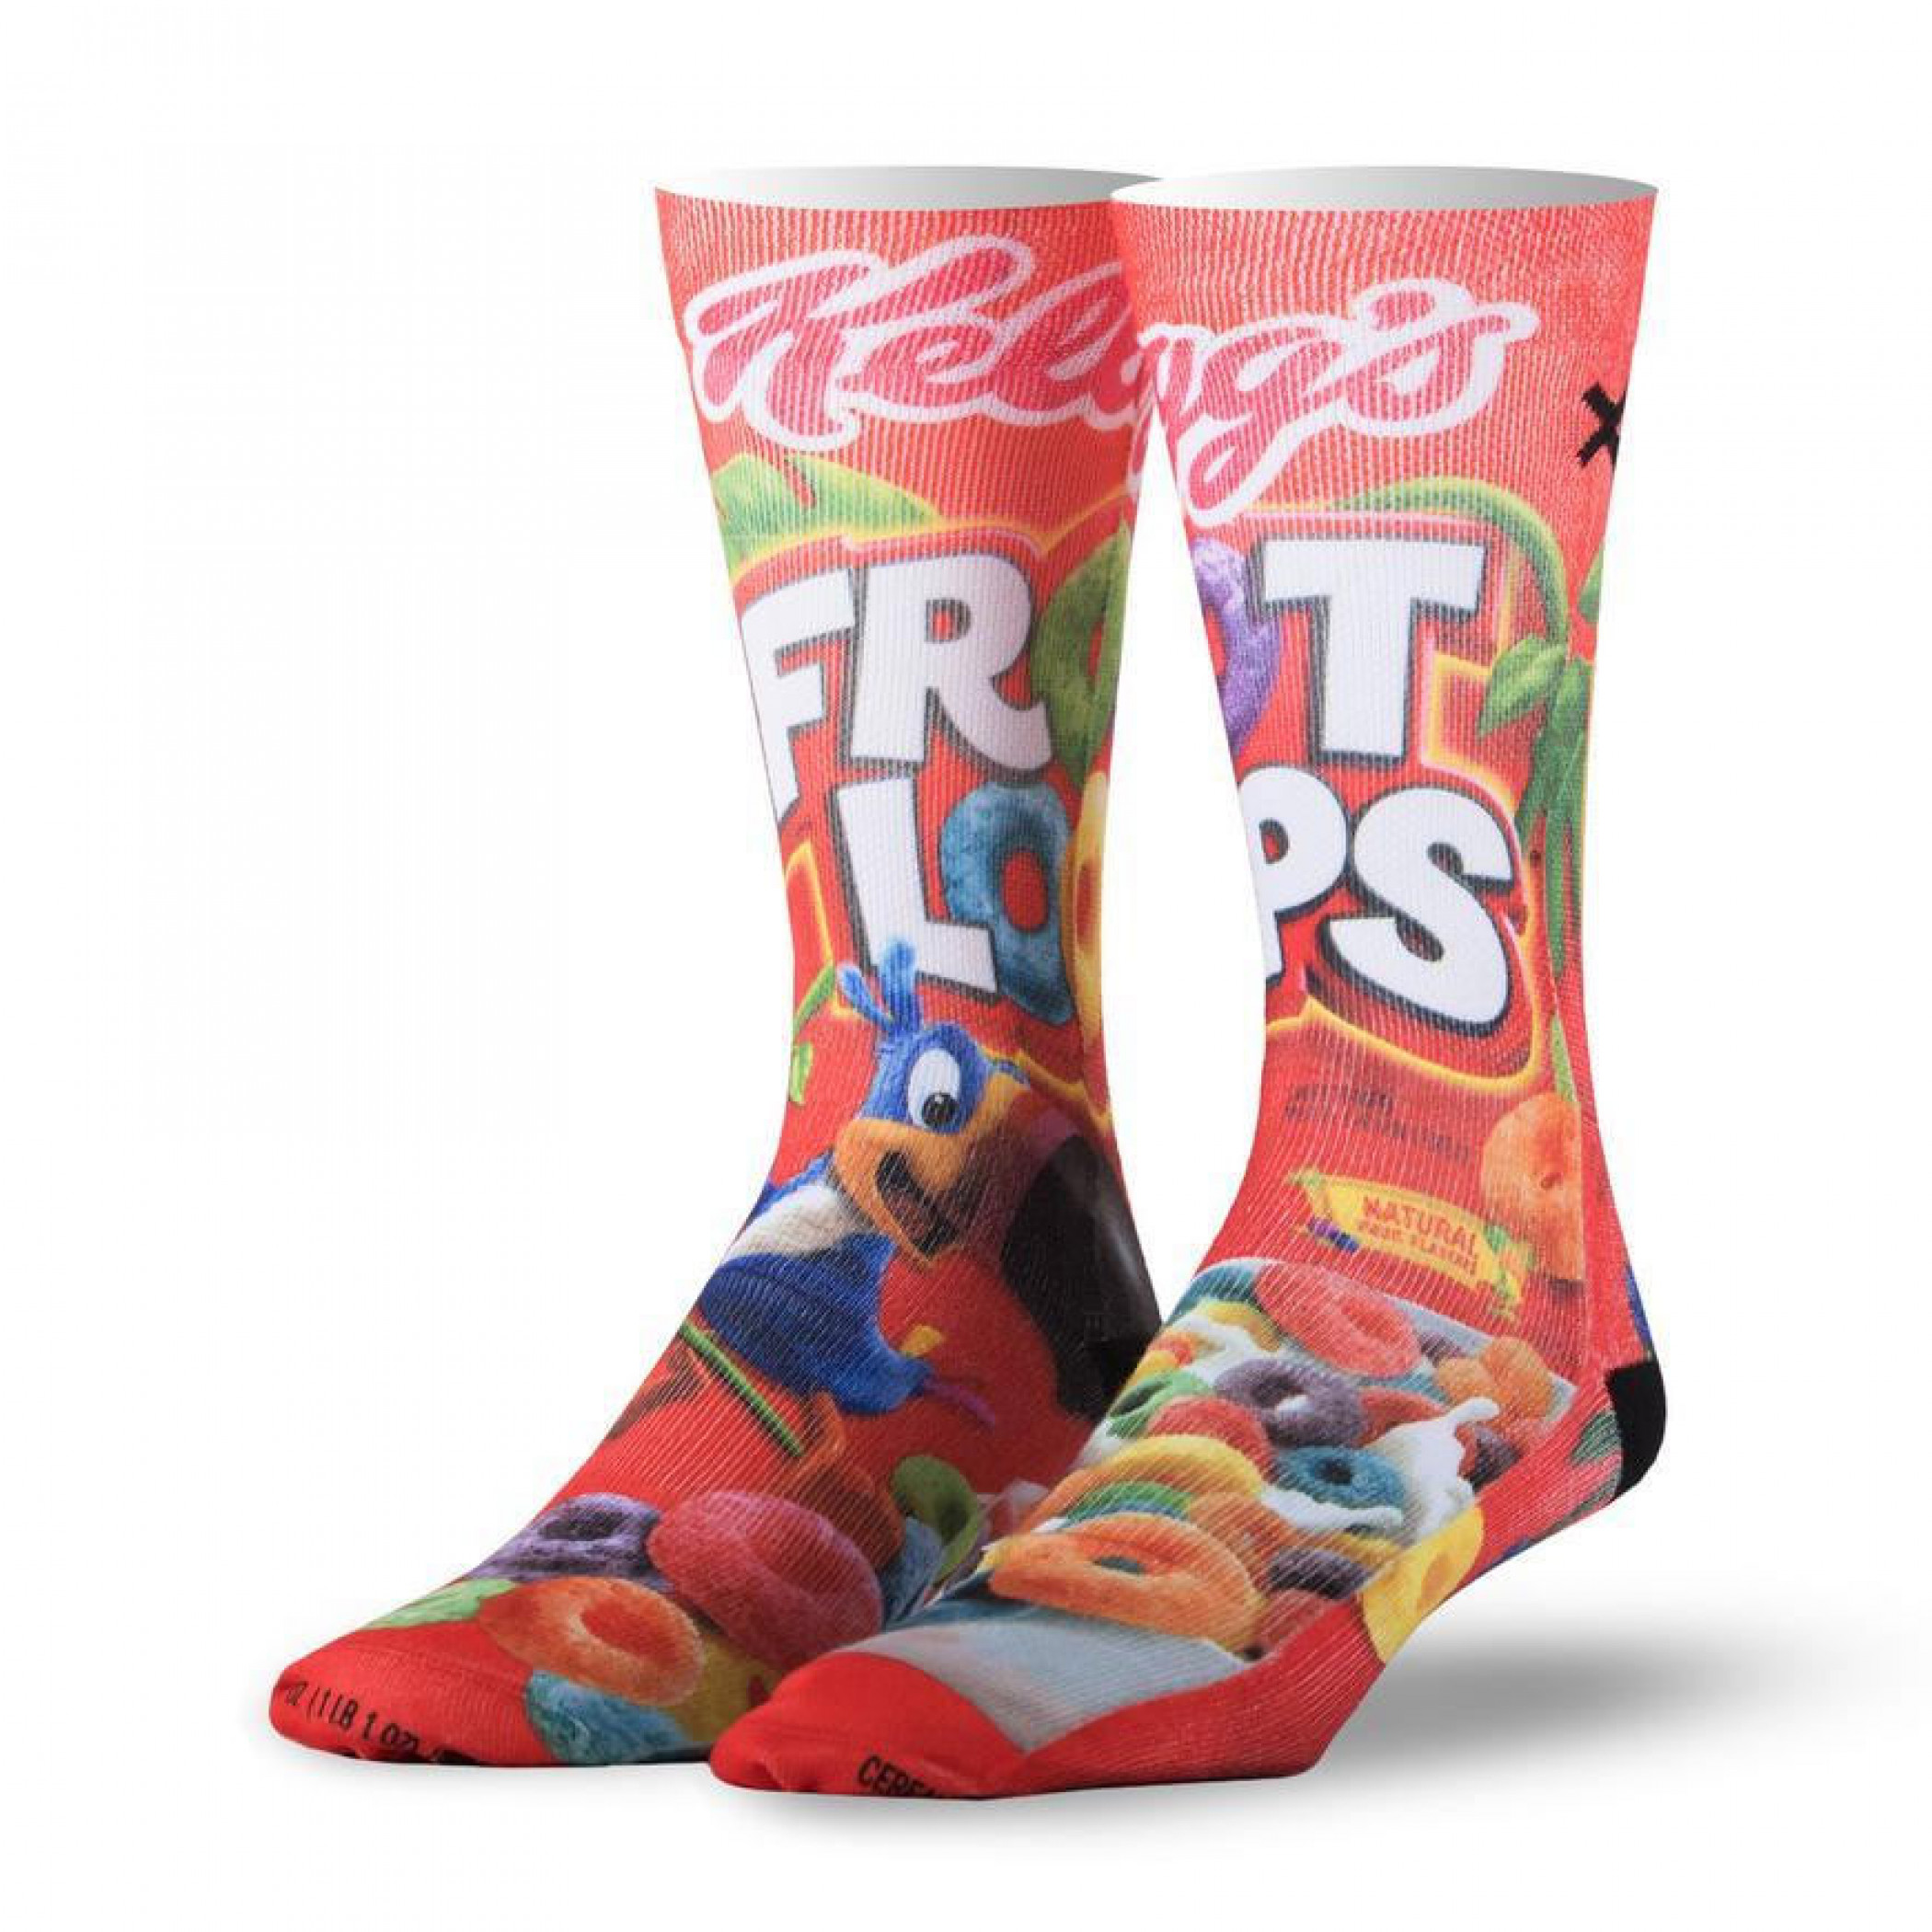 Froot Loops Cereal Fruit Loops Socks